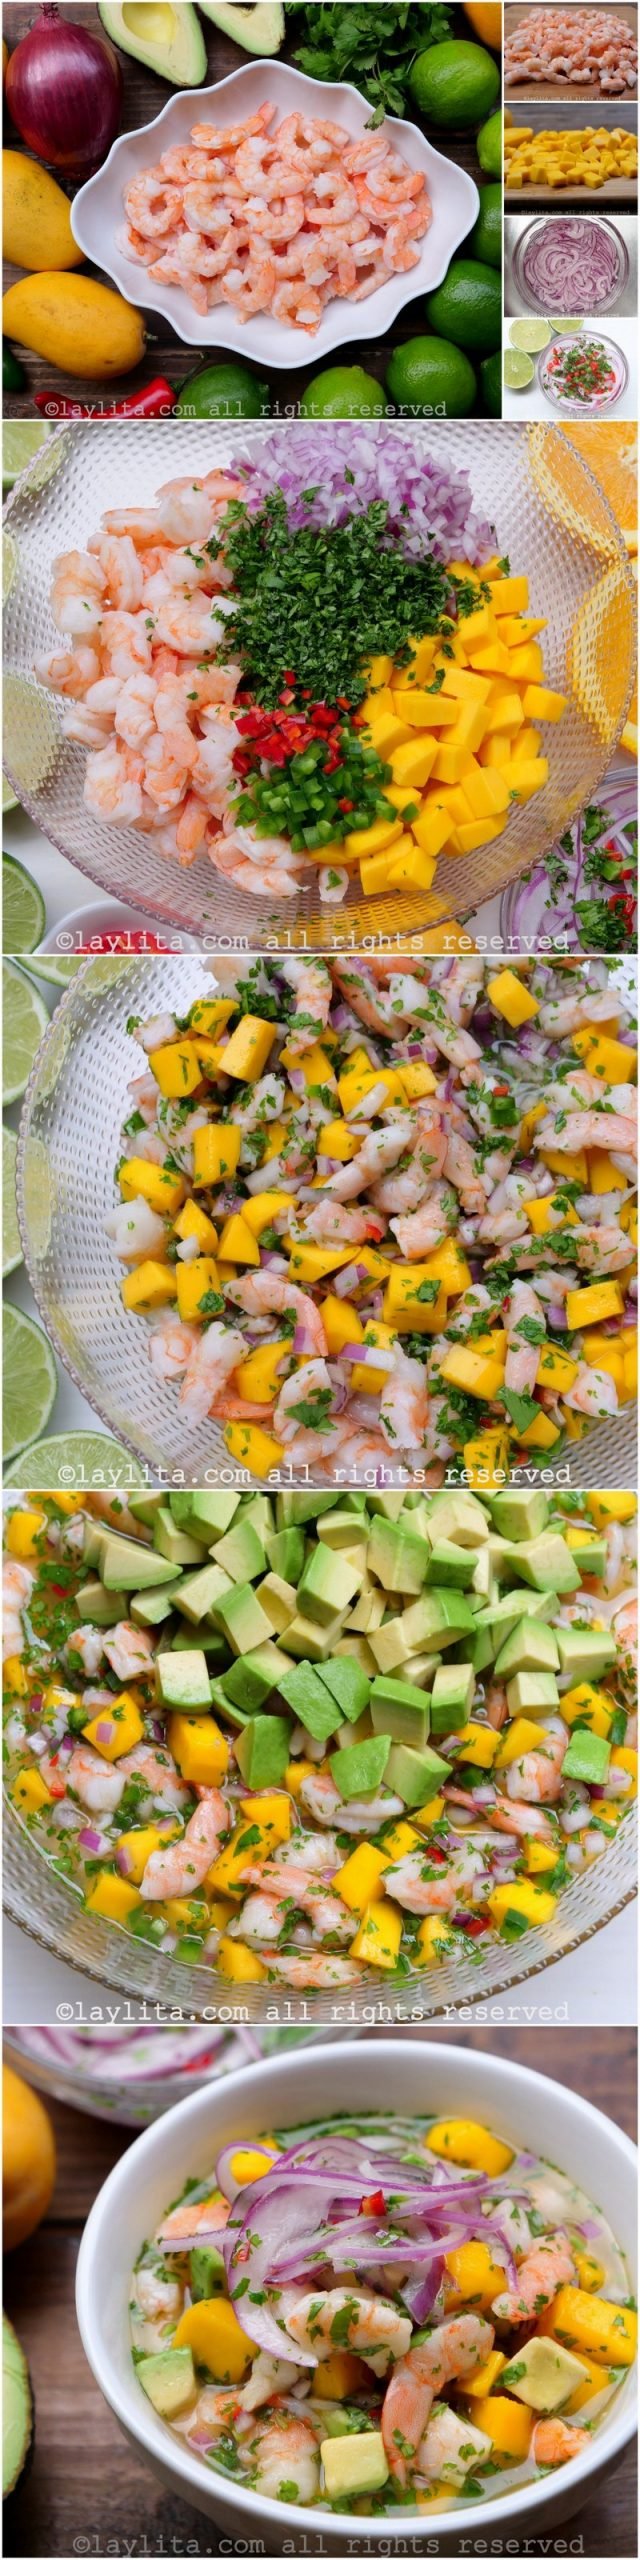 Fotos paso a paso para preparar el ceviche de camarón y mango con aguacate